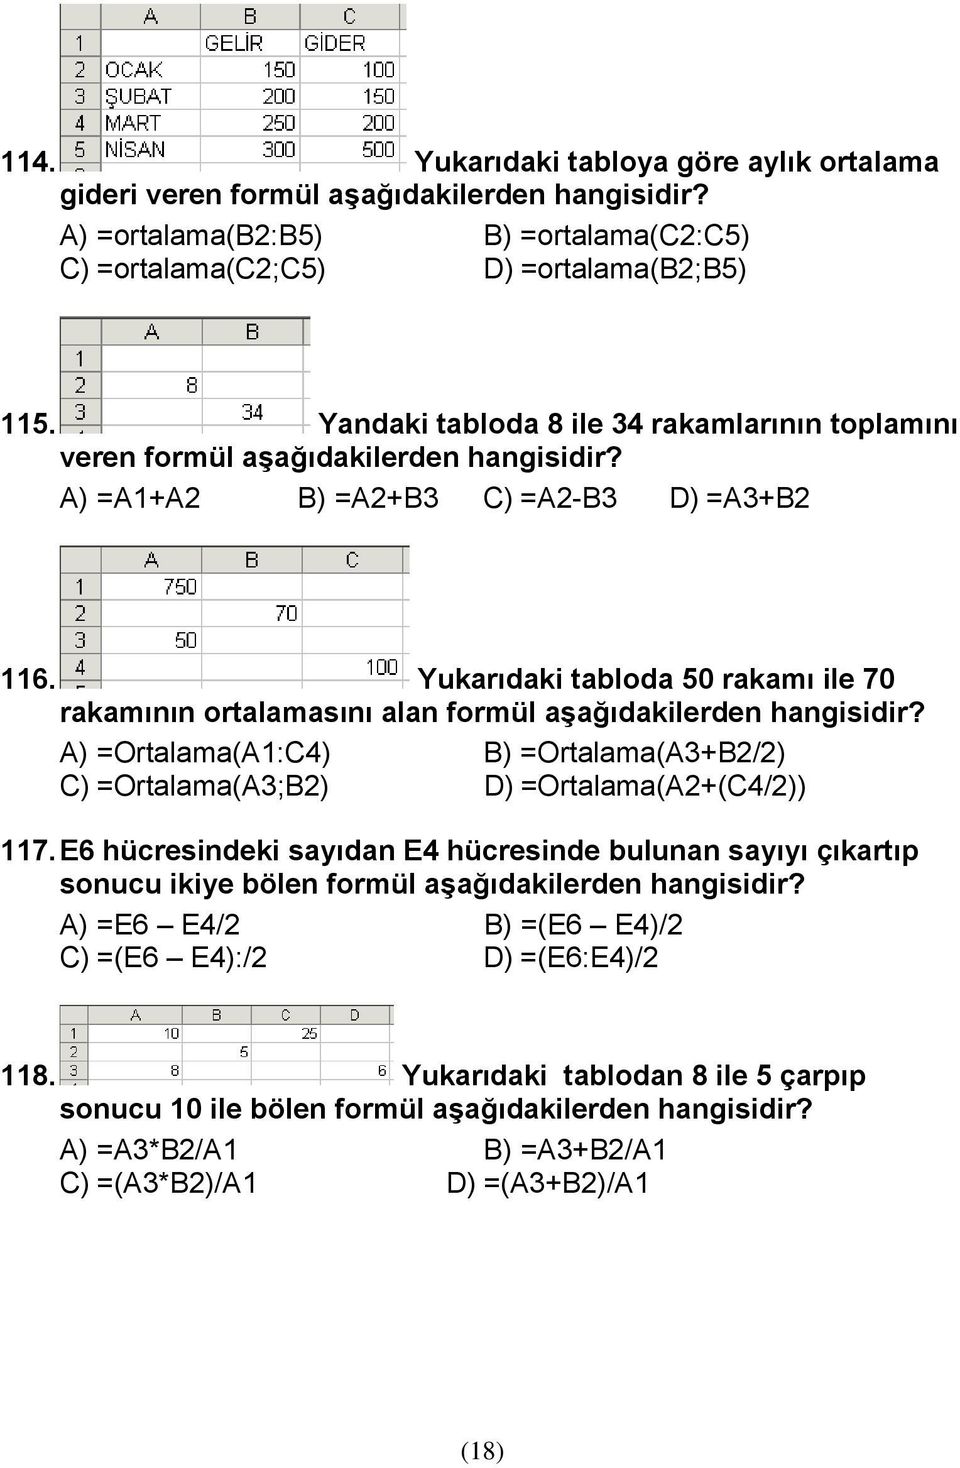 Yukarıdaki tabloda 50 rakamı ile 70 rakamının ortalamasını alan formül aşağıdakilerden hangisidir? A) =Ortalama(A1:C4) B) =Ortalama(A3+B2/2) C) =Ortalama(A3;B2) D) =Ortalama(A2+(C4/2)) 117.